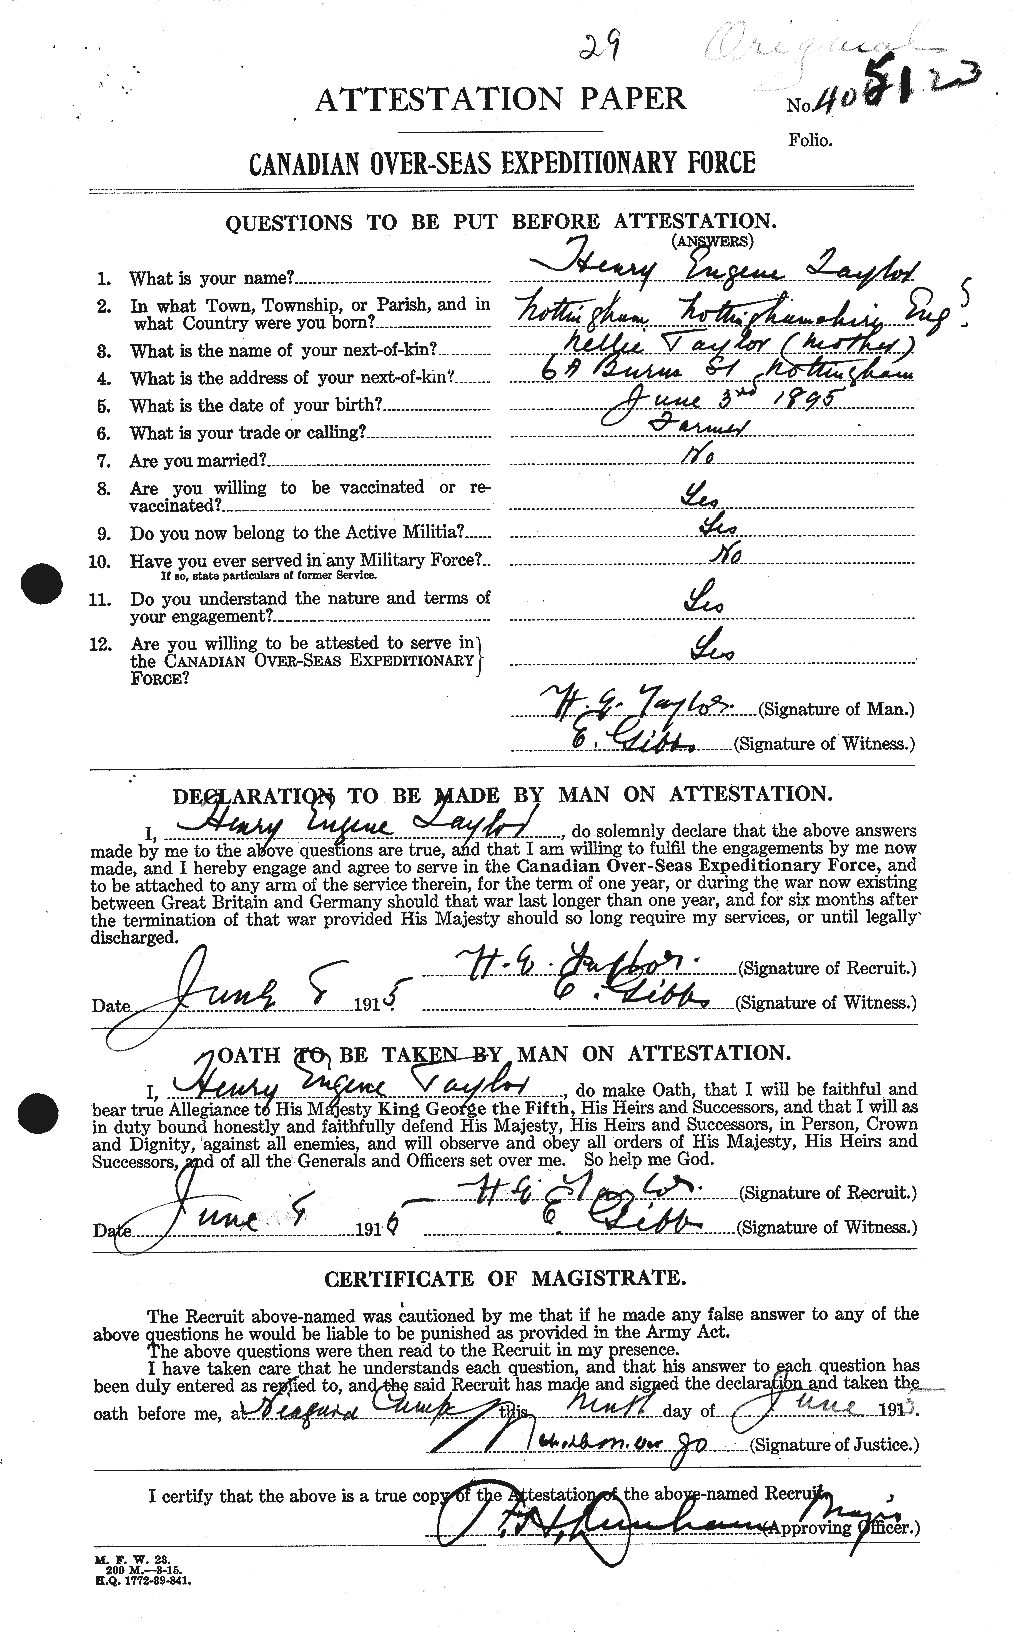 Dossiers du Personnel de la Première Guerre mondiale - CEC 626538a